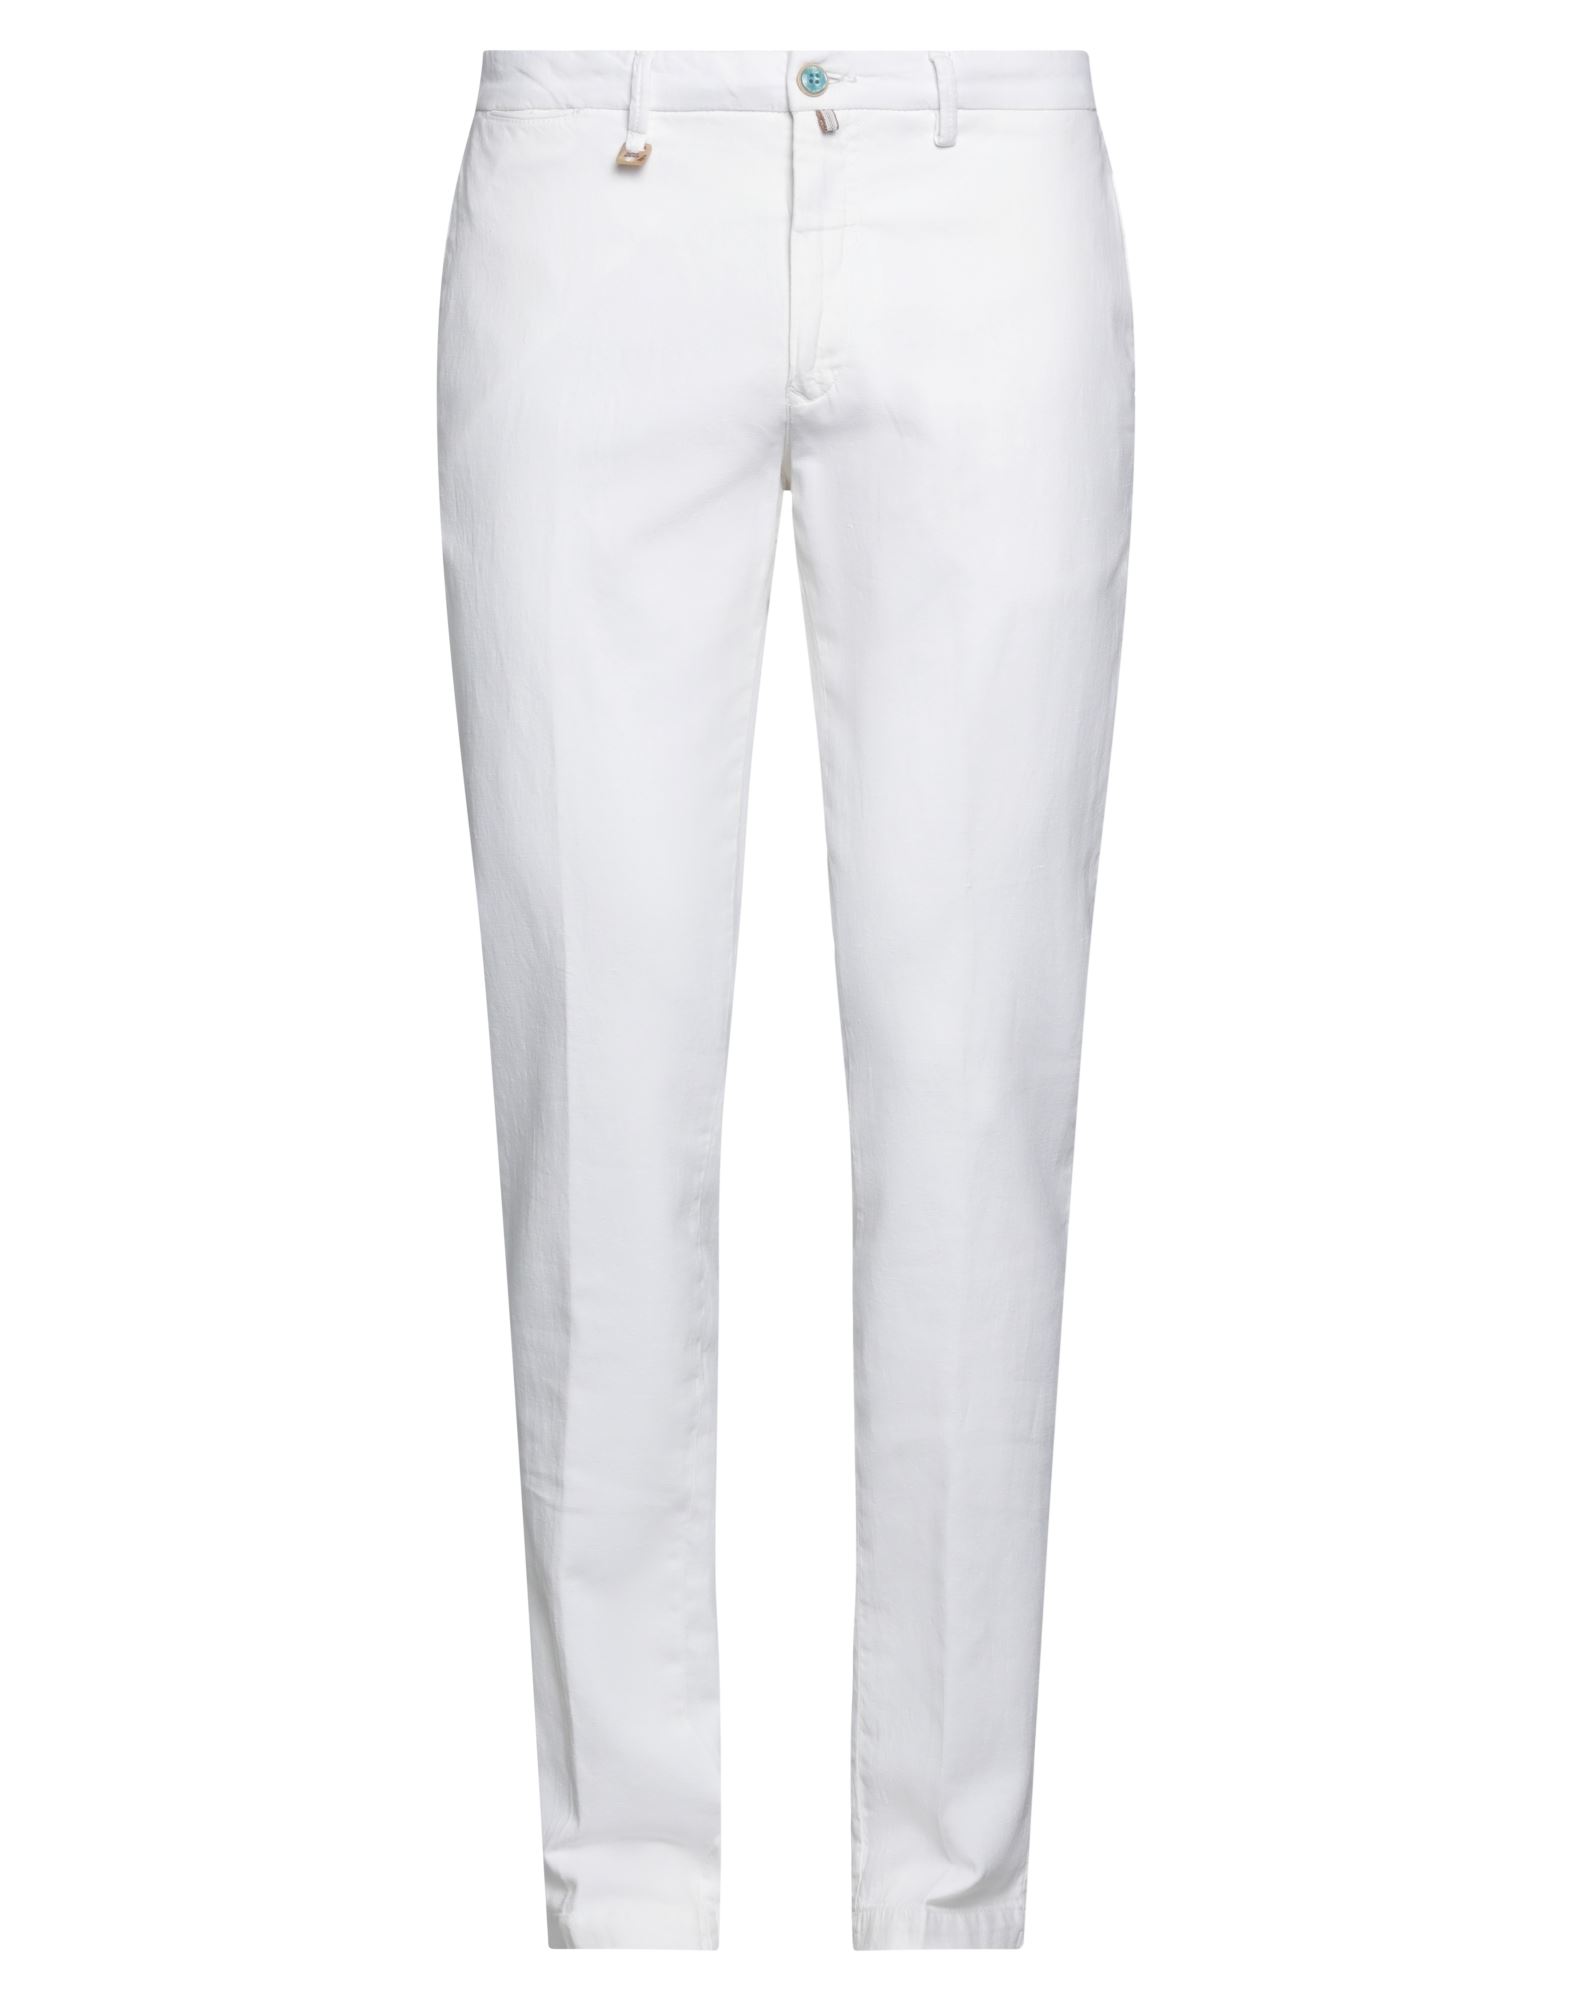 Barbati Pants In White